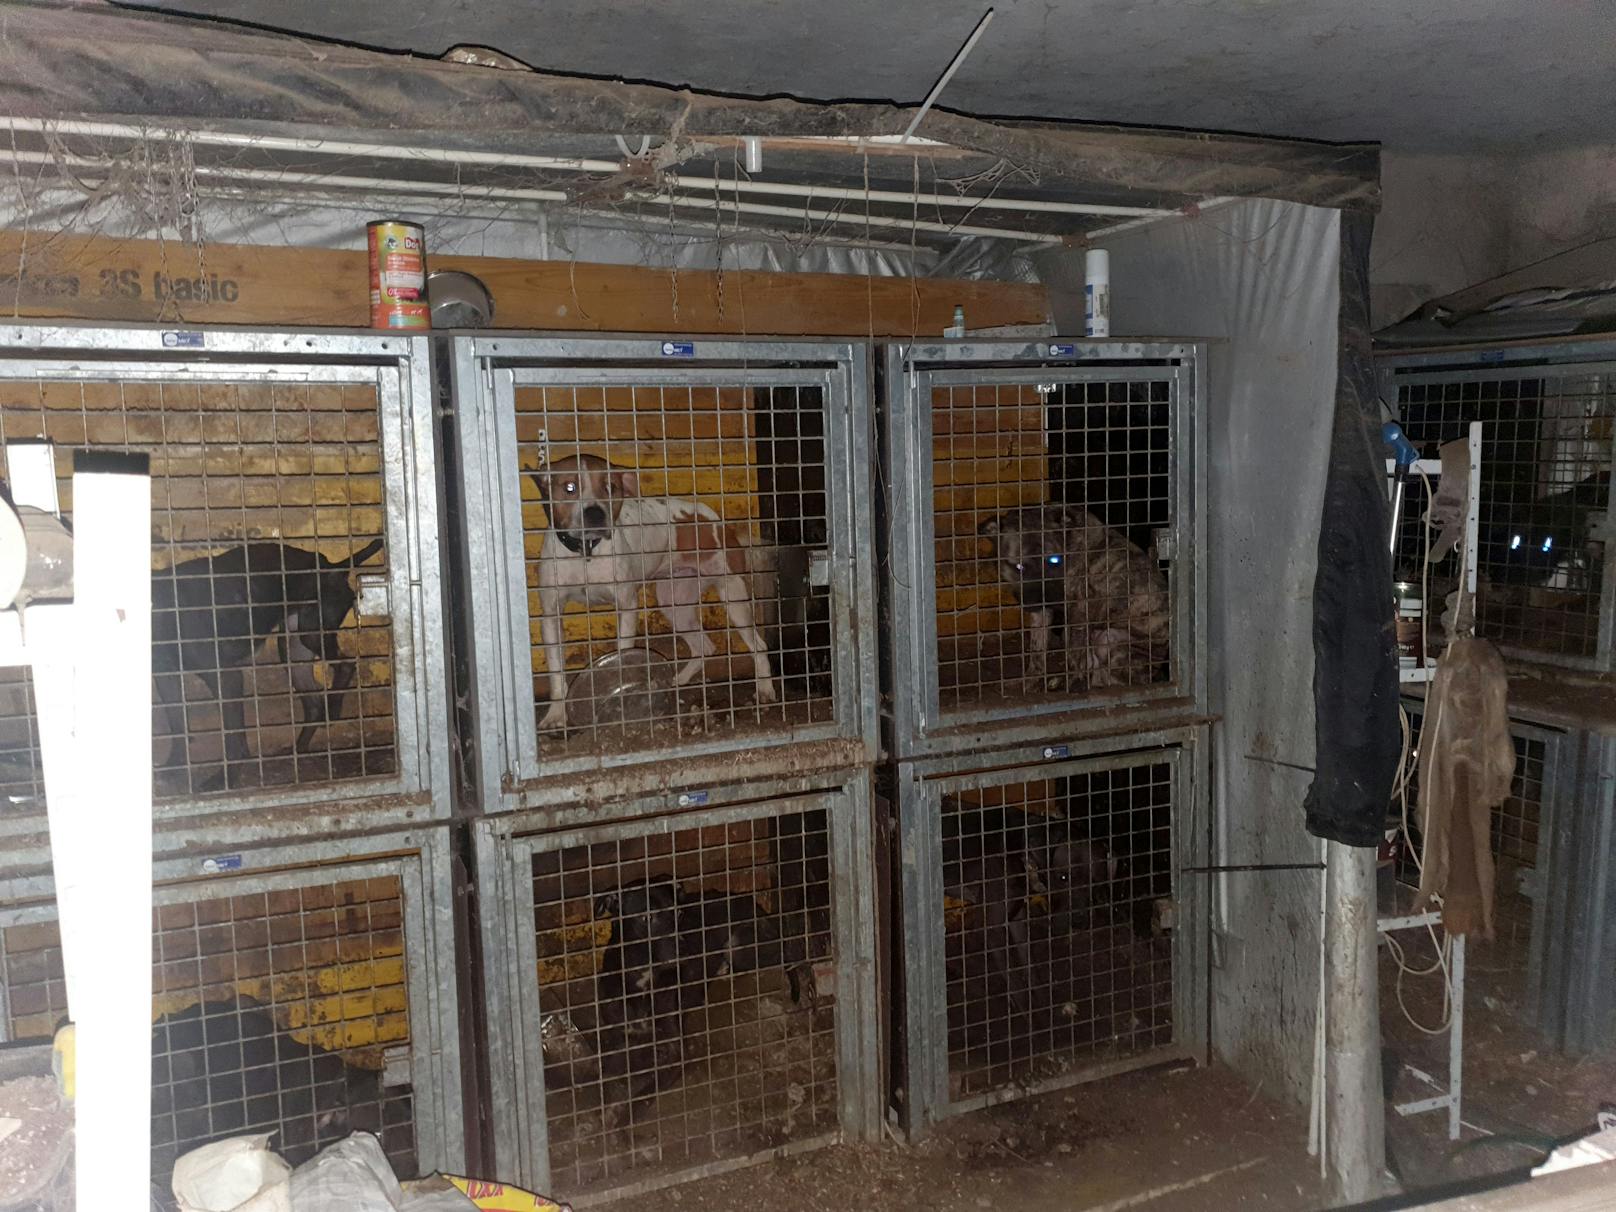 Insgesamt 44 Hunde wurden in Käfigen gehalten und für illegale Kämpfe missbraucht. 